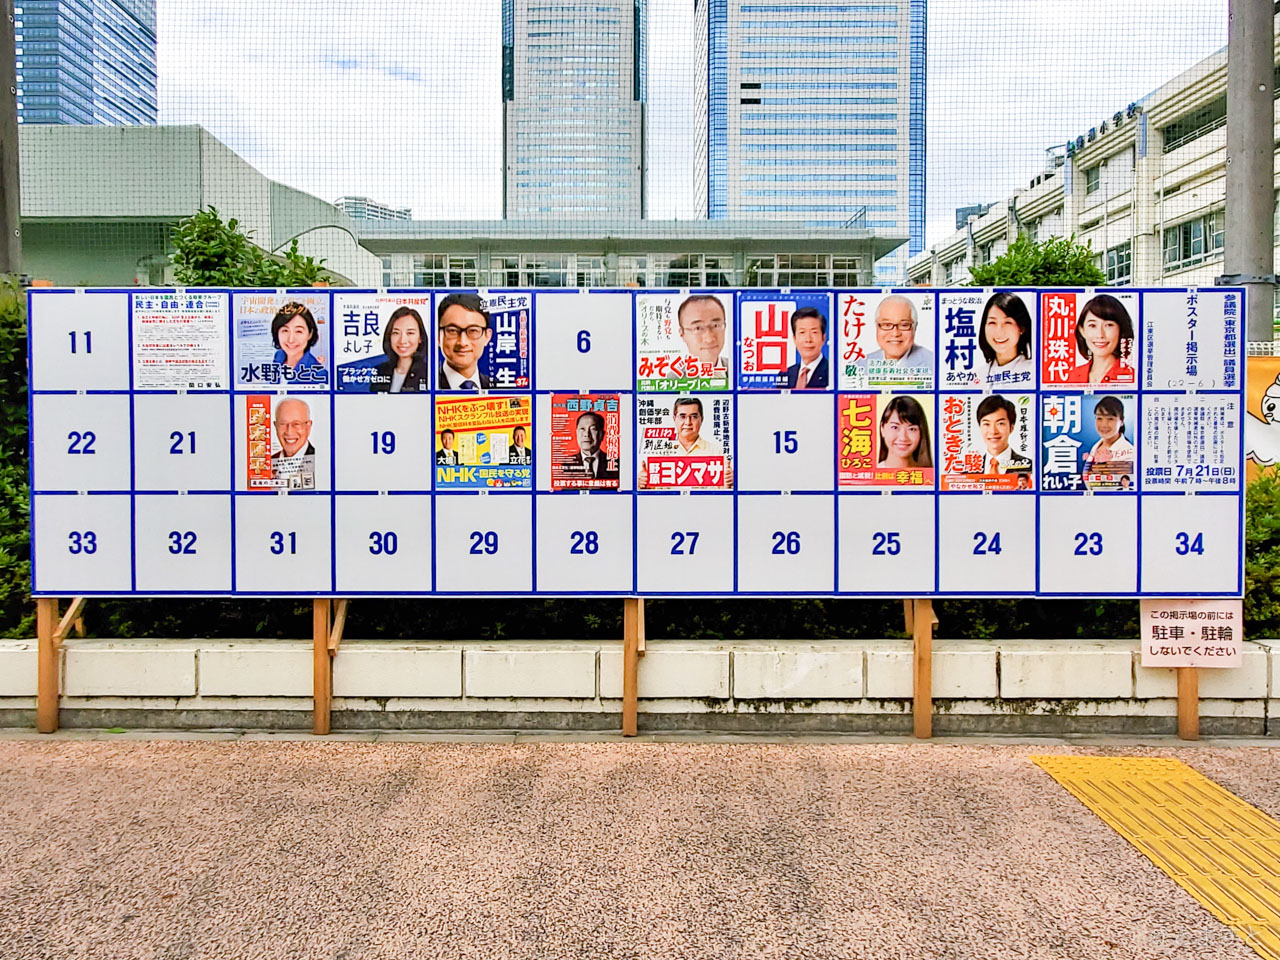 参院選19 選挙結果 東京選挙区 当選者と候補者人それぞれの得票数 とよすと